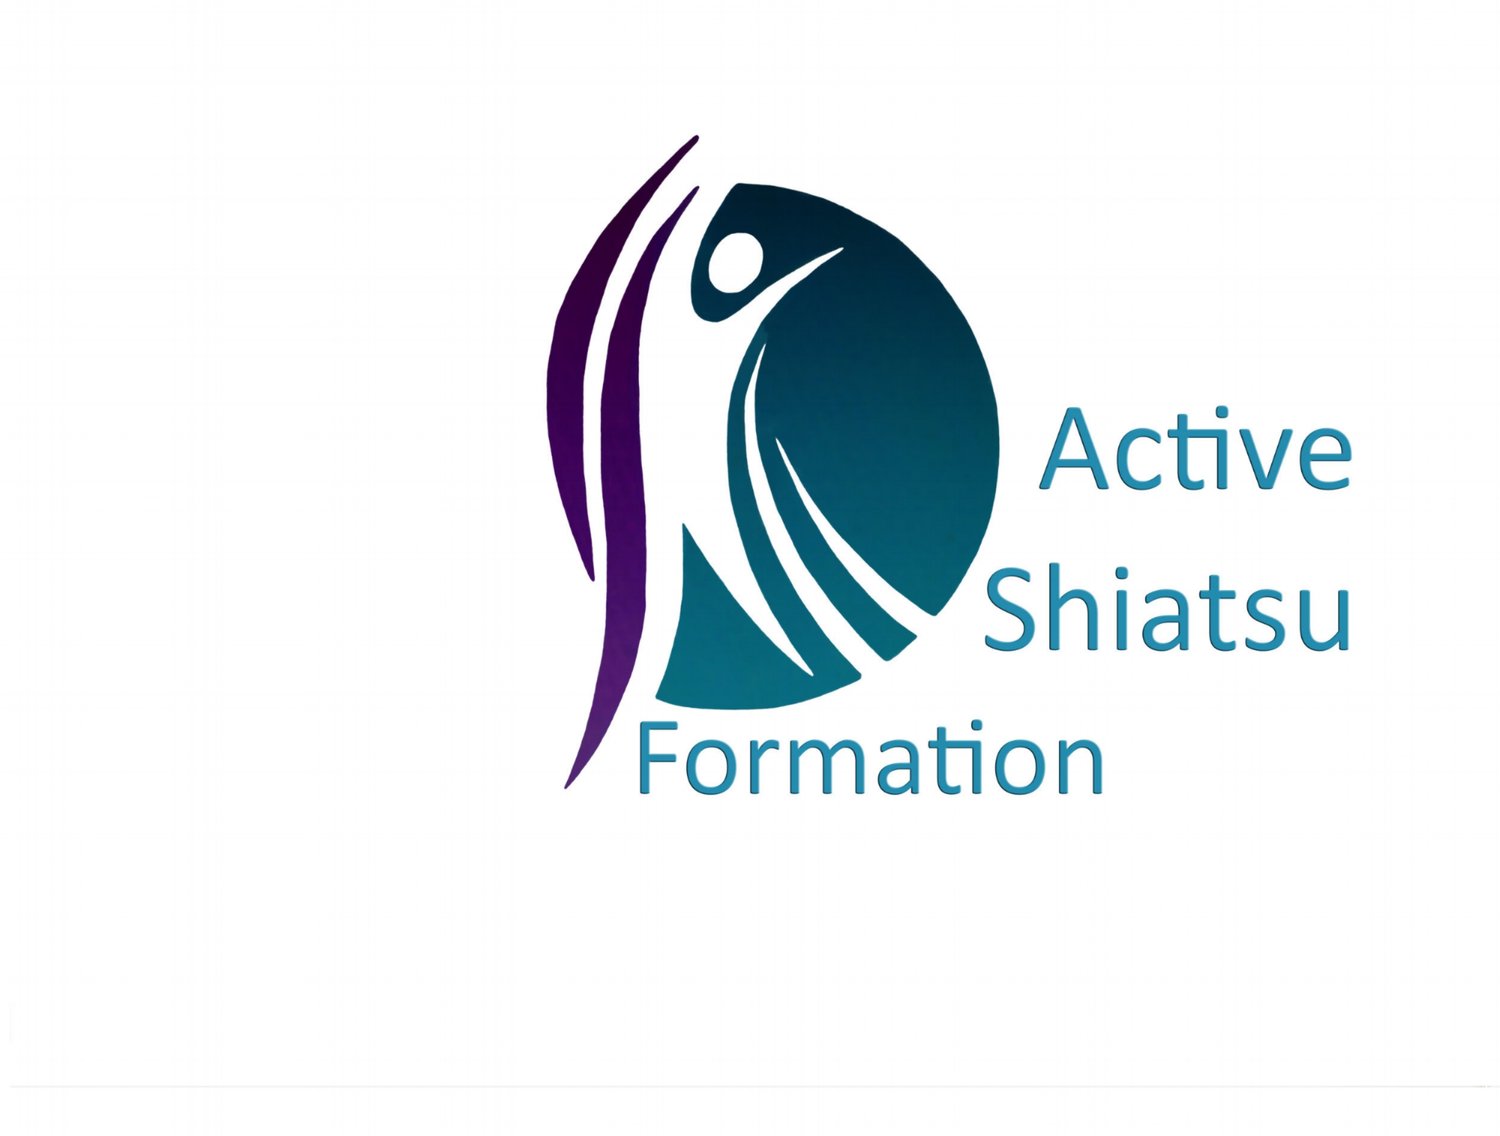 Association Active Shiatsu